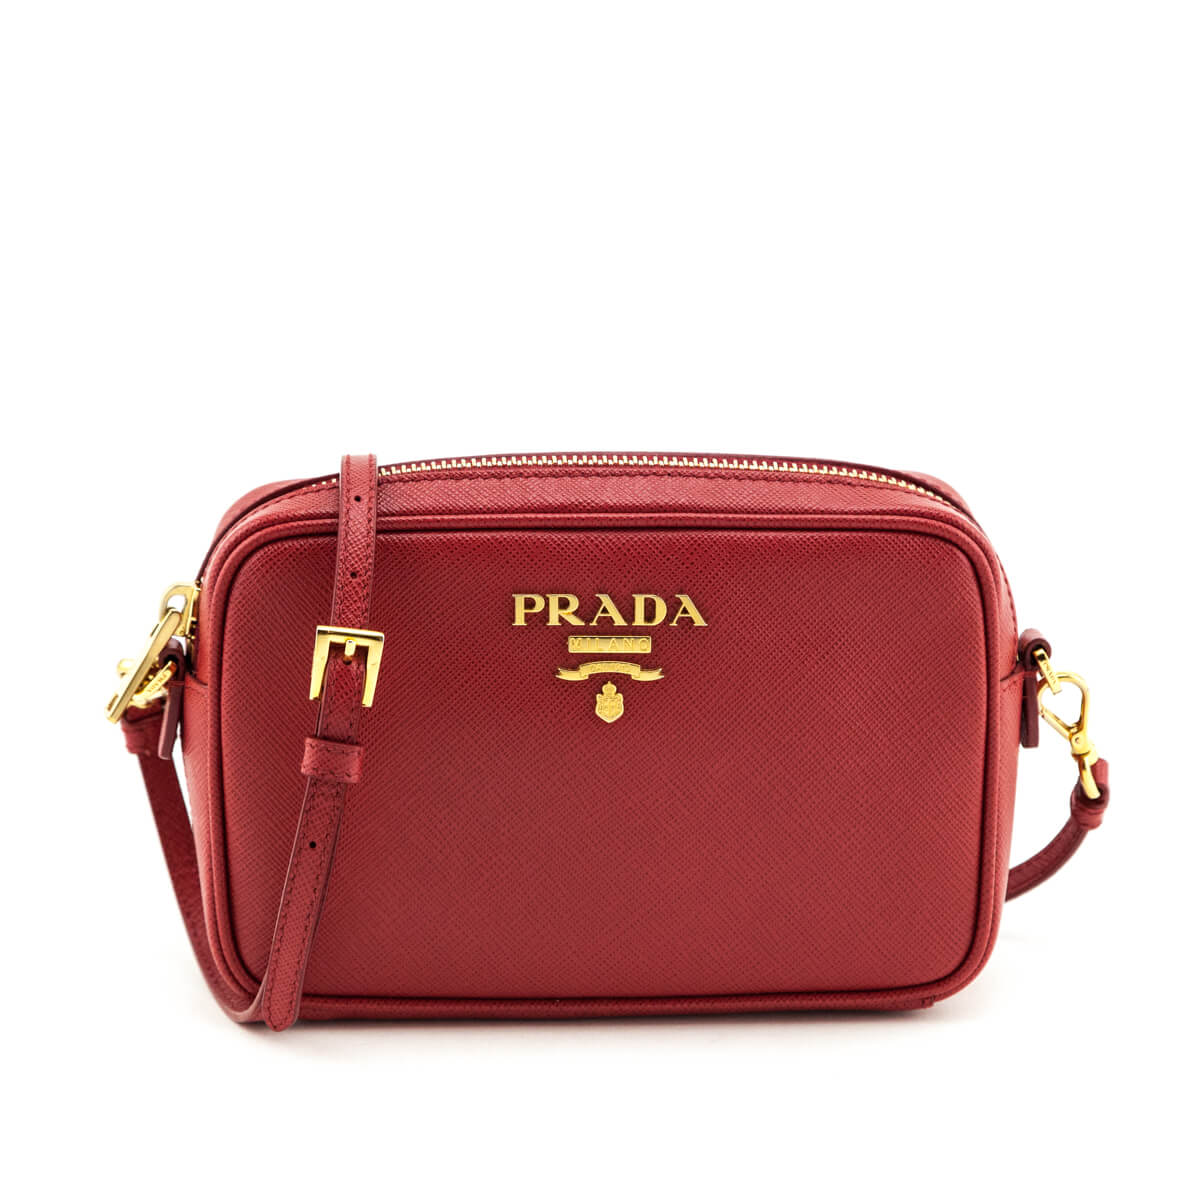 Prada, Bags, Prada Mini Crossbody Bag Red